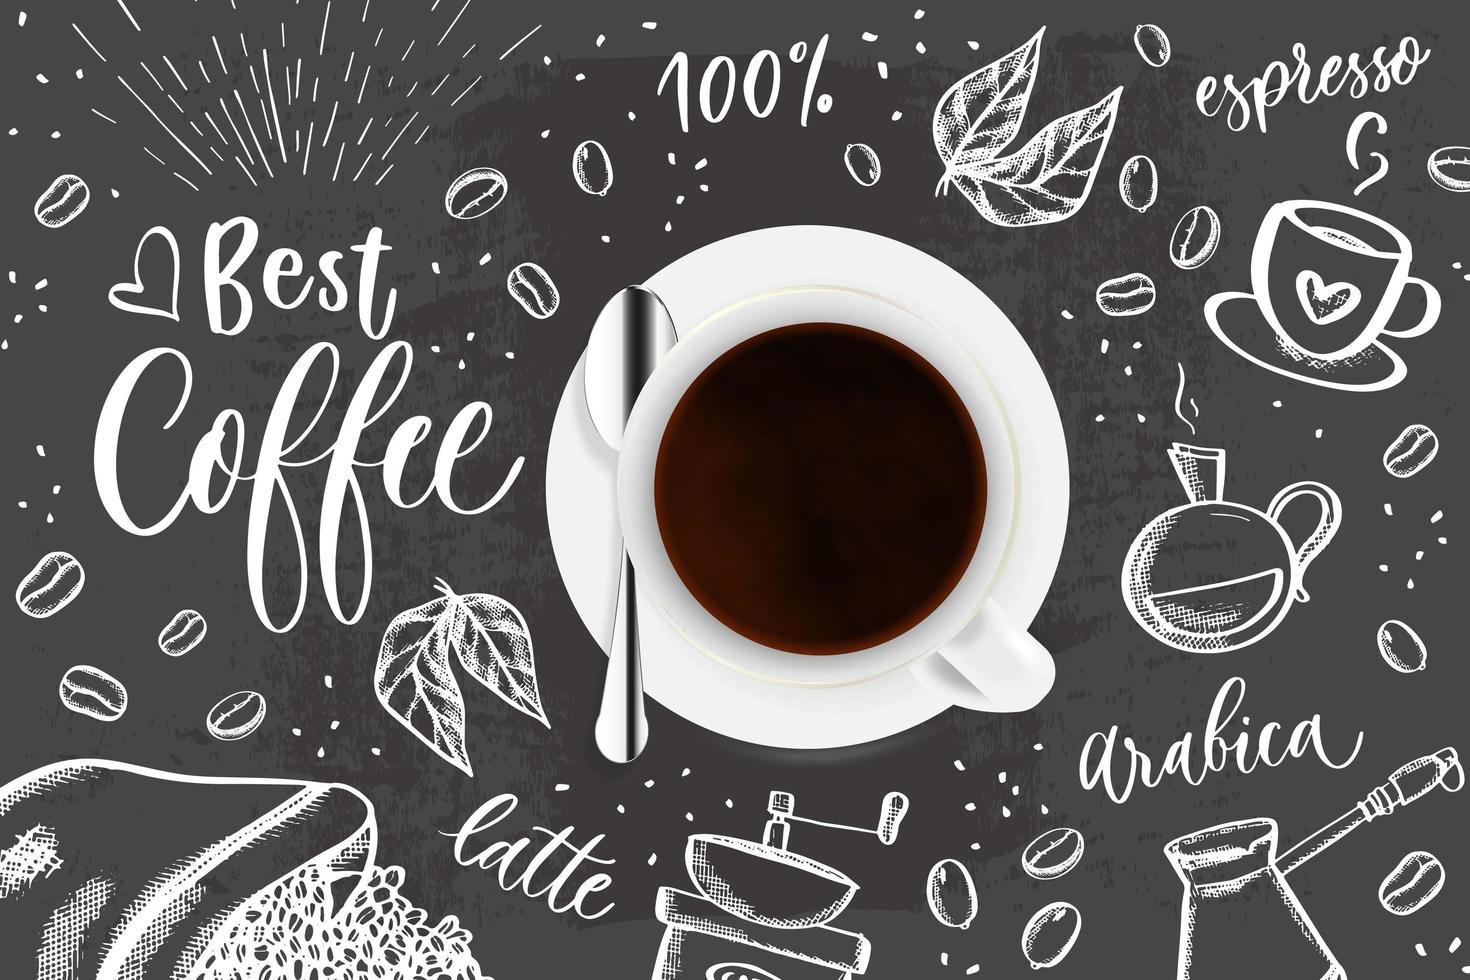 Cà phê - món đồ uống yêu thích của nhiều người. Nếu bạn cũng là một tín đồ của cà phê, hãy tham khảo hình ảnh của từng loại cà phê độc đáo và hấp dẫn tại đây! Với những hạt cà phê tuyệt vời được rang tử tế, tách cà phê sẽ trở nên ngon hơn bao giờ hết.